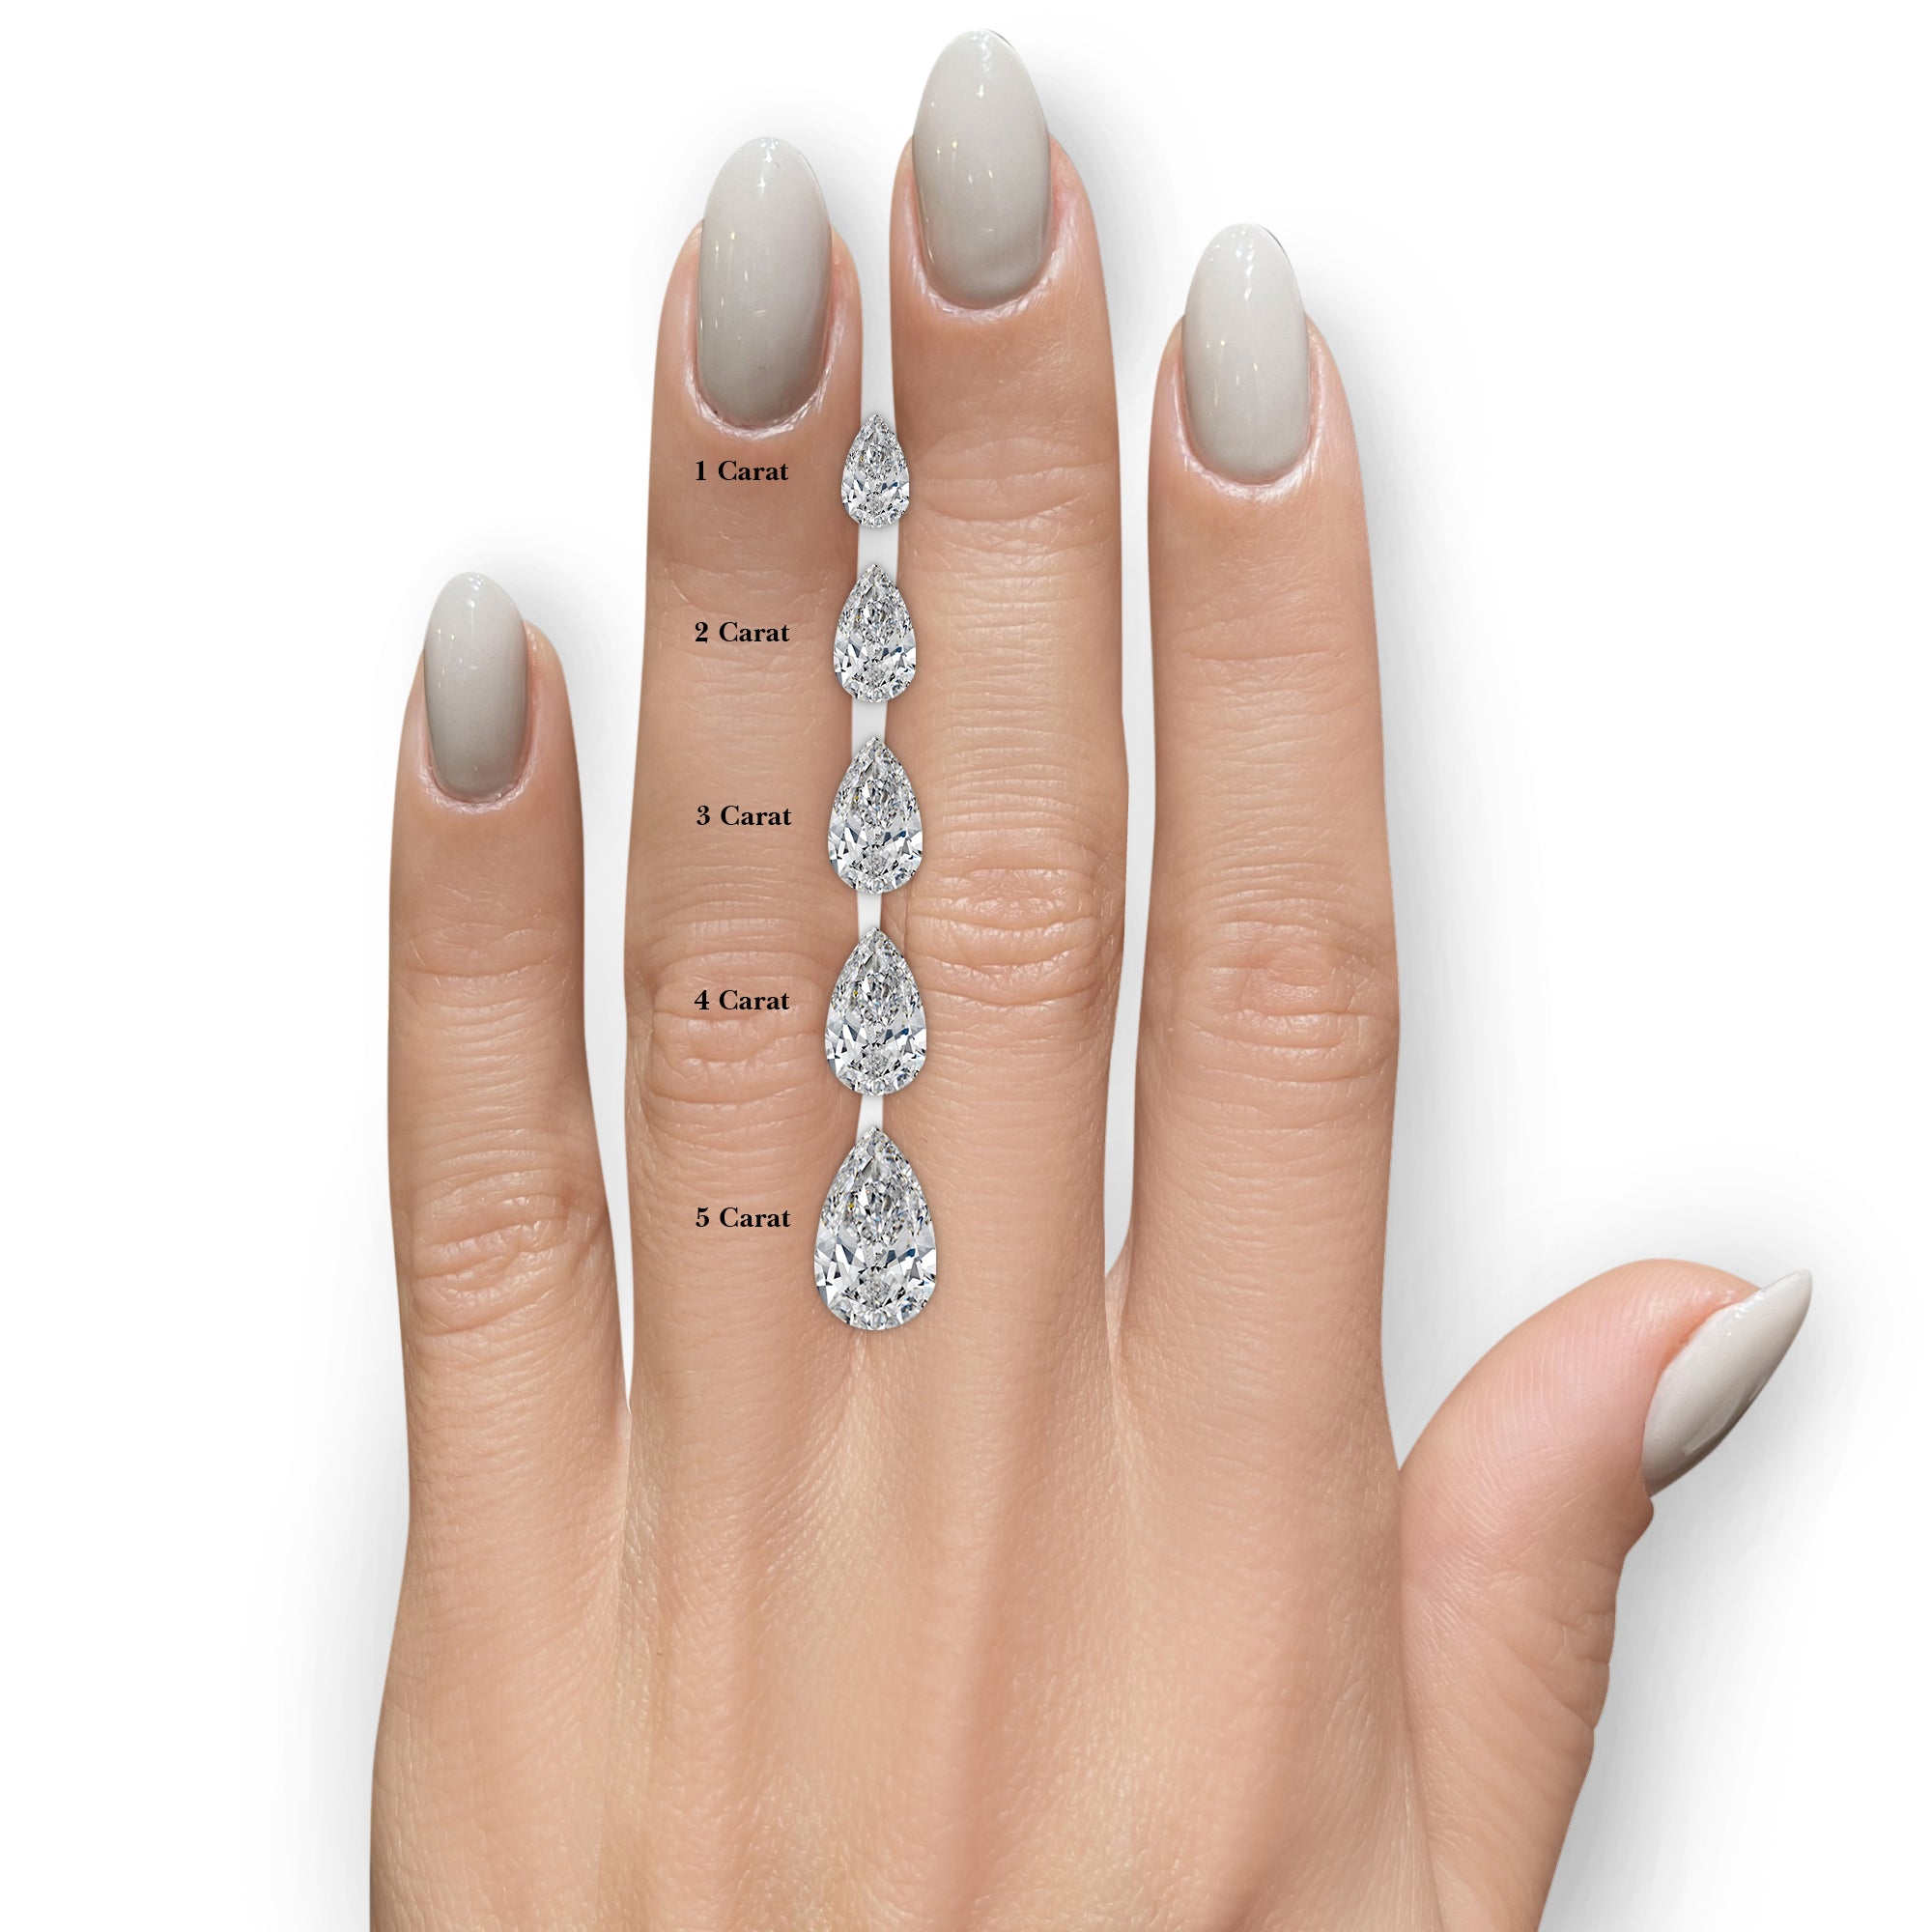 Mabel Lab Grown Diamond Ring -14K White Gold